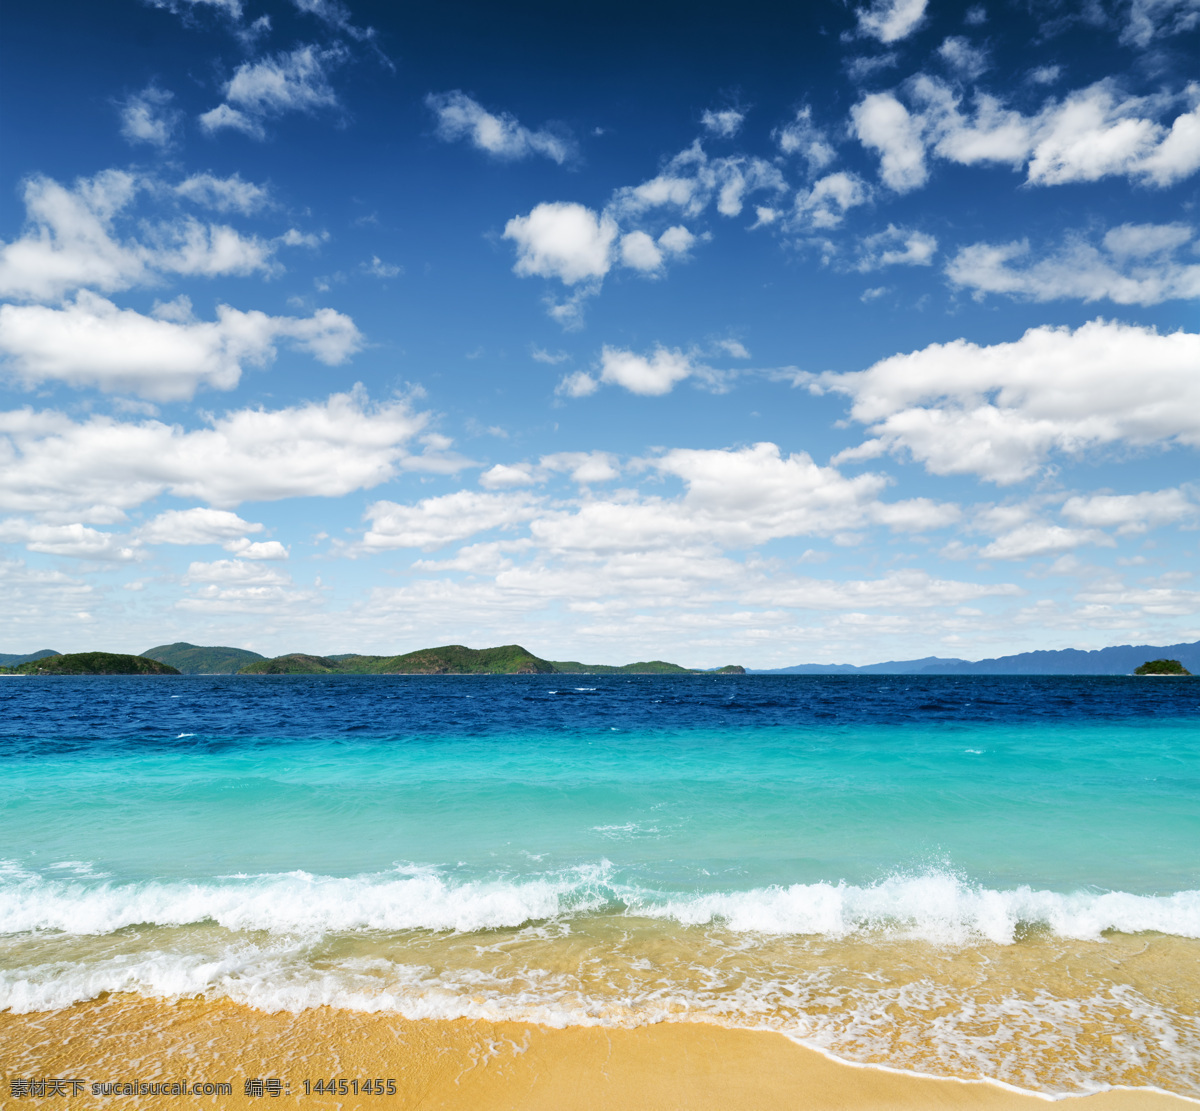 海边美景 海滩 海面 大海 海水 海边 蓝海水 沙滩 沙子 蓝天 小岛 岛屿 白云 云彩 热带风景 自然风景 自然景观